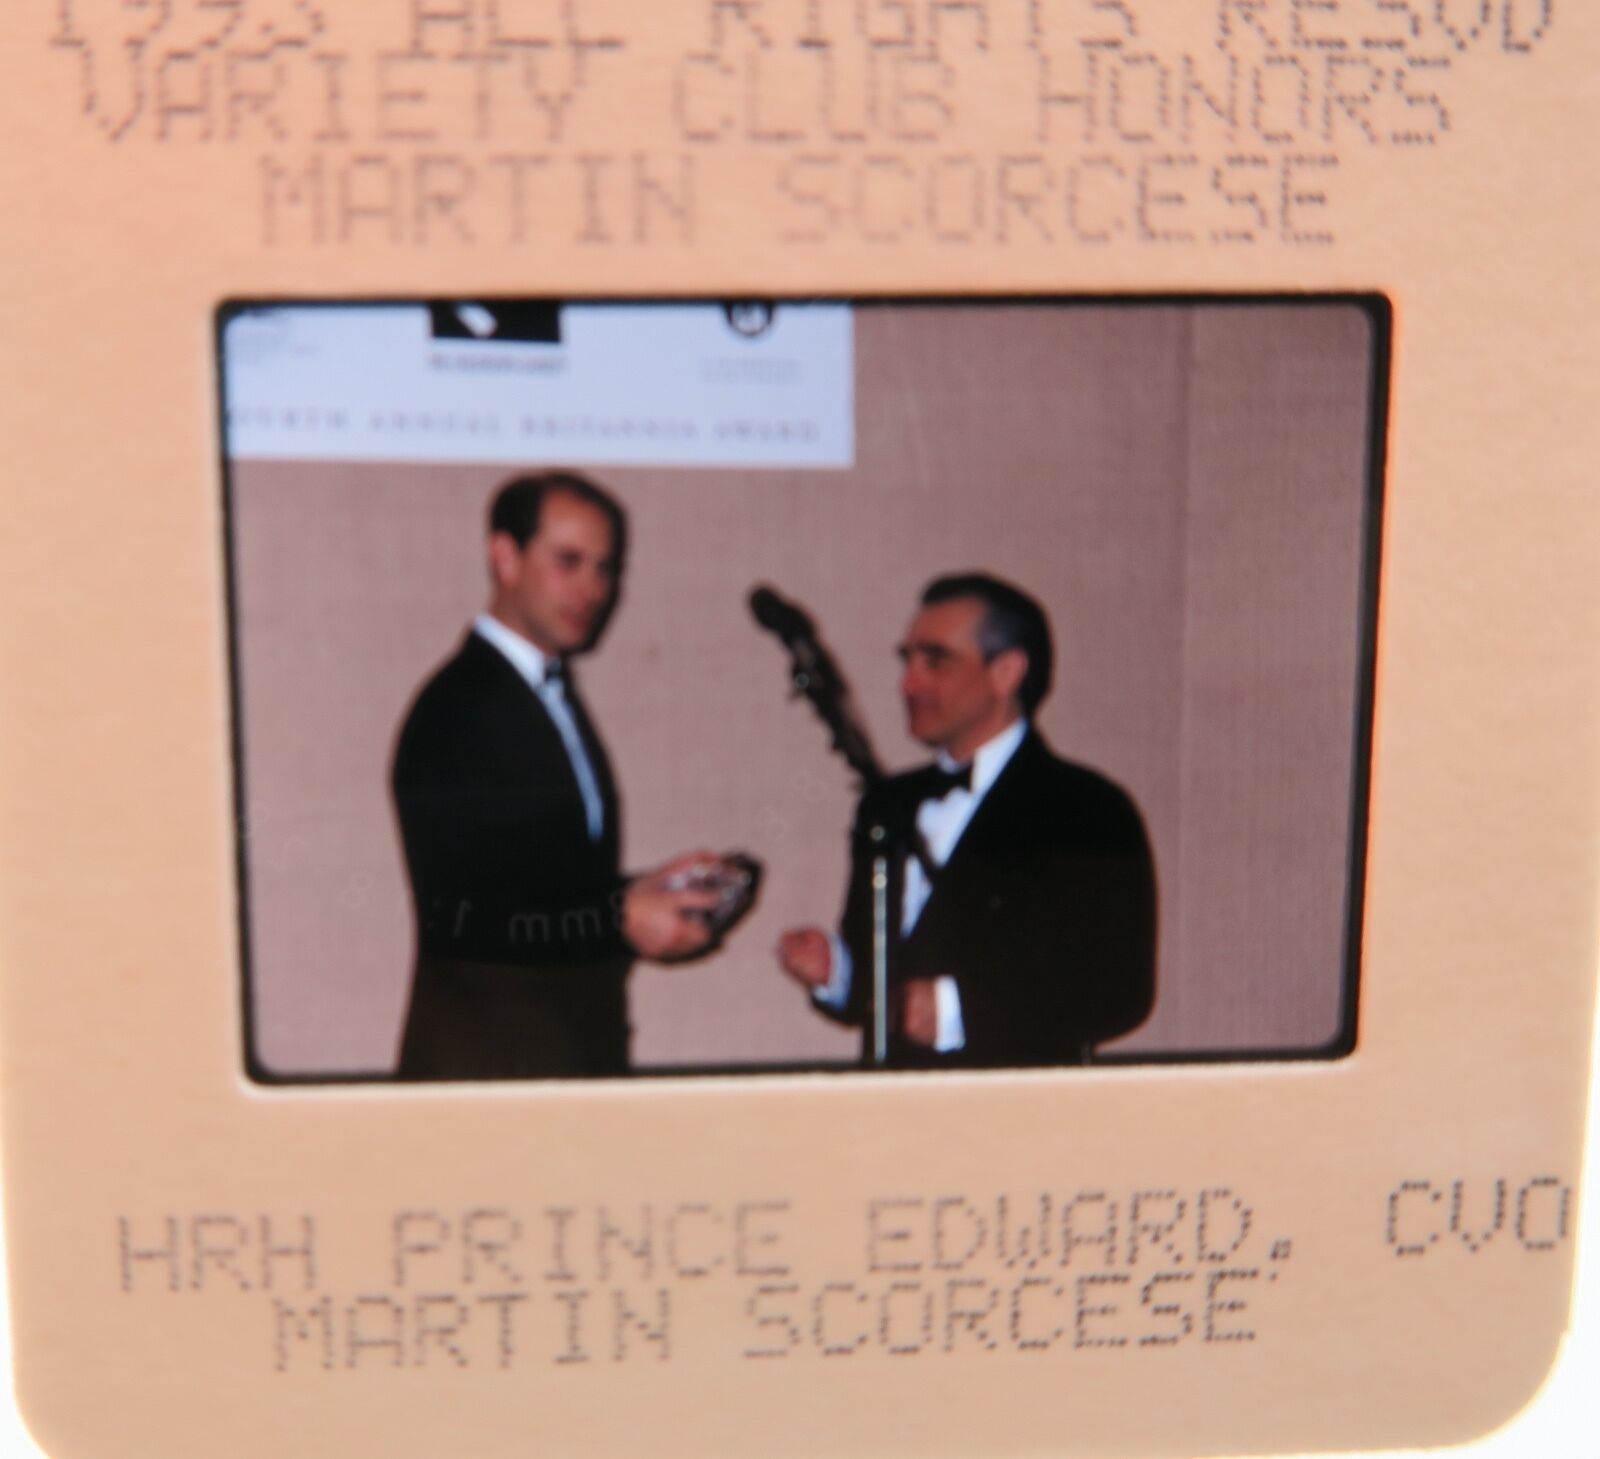 HRH PRINCE EDWARD 1993 MARTIN SCORCESE ORIGINAL SLIDE 18